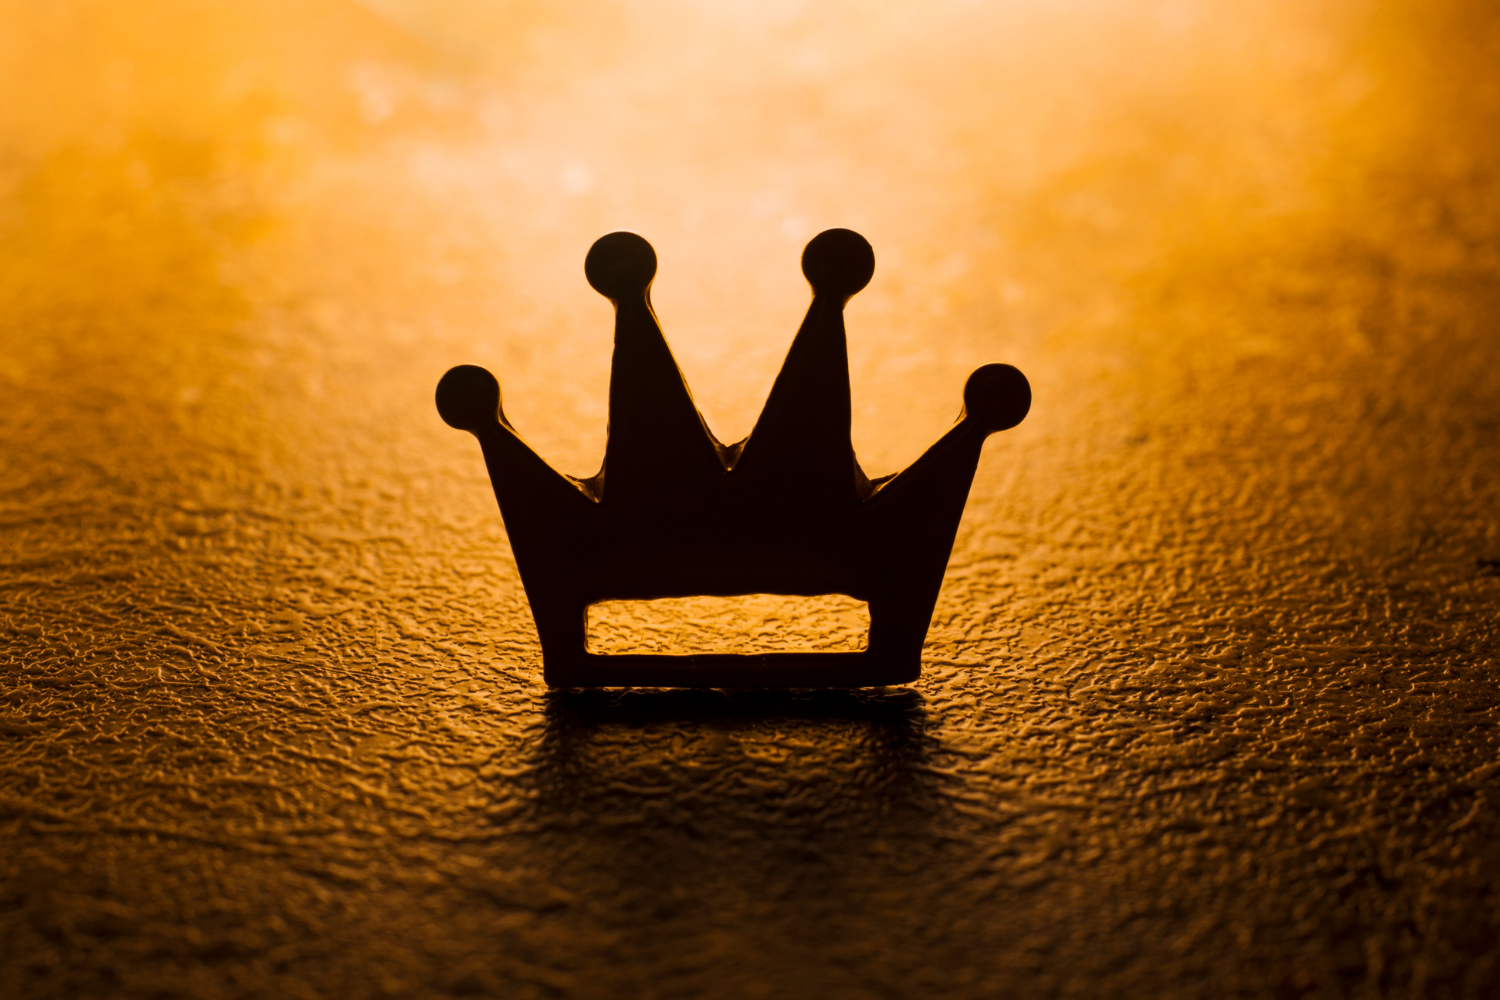 48-b26af4ce King / crown